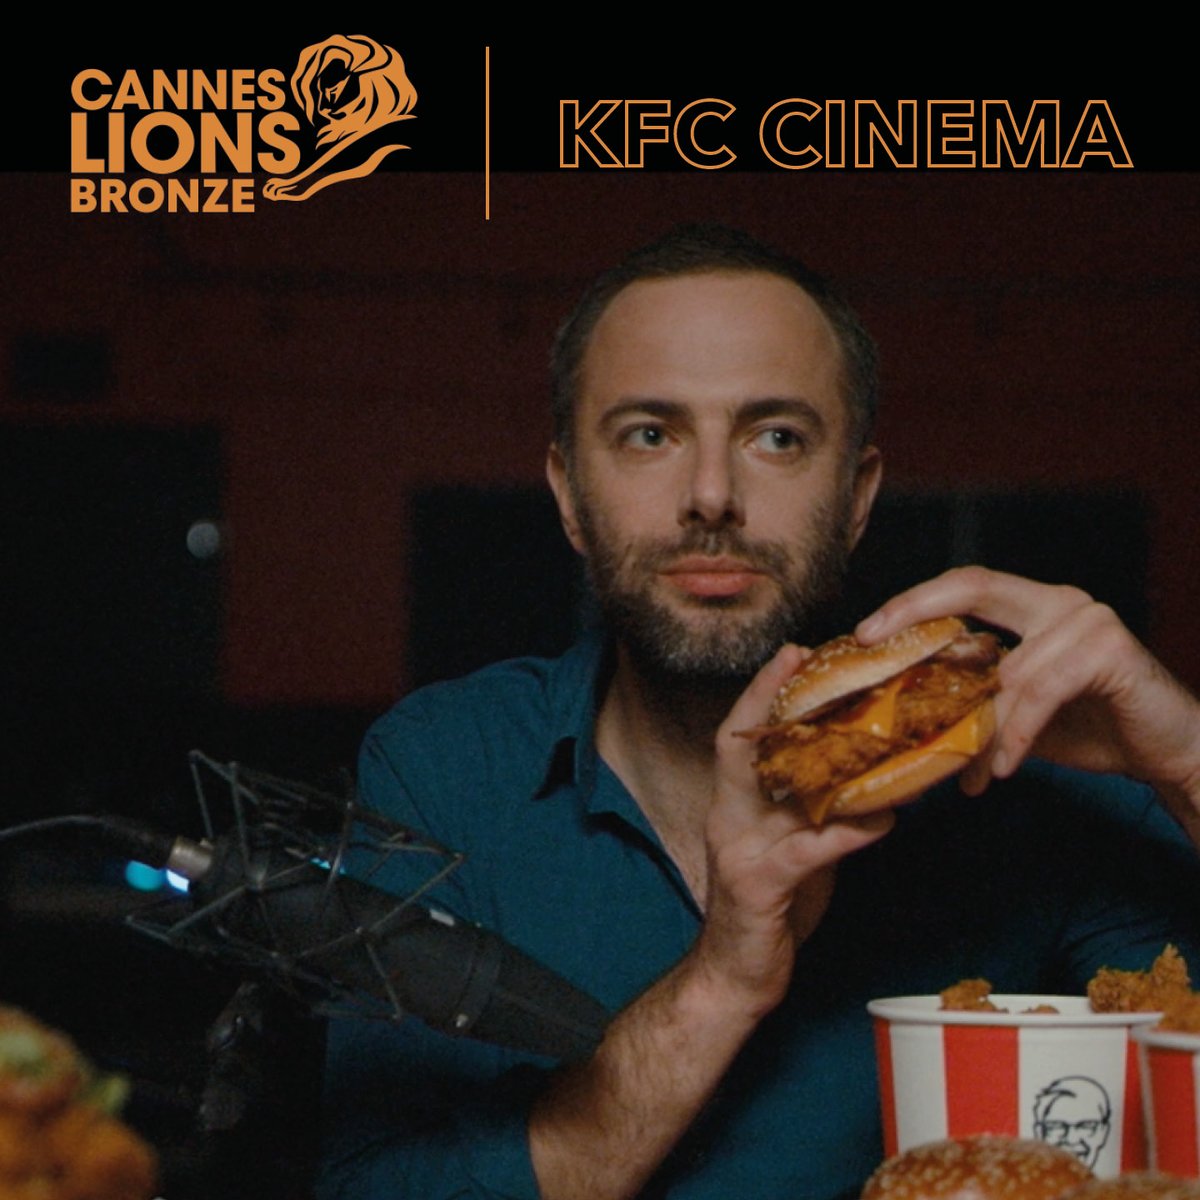 Une journée qui croustille !🍗
Hier soir, nous avons été récompensés d'un bronze aux #CannesLions pour notre campagne KFC Cinéma.
Un grand bravo à toutes les équipes ! 💪
@KFCFrance #ProudAgency #HavasCannes